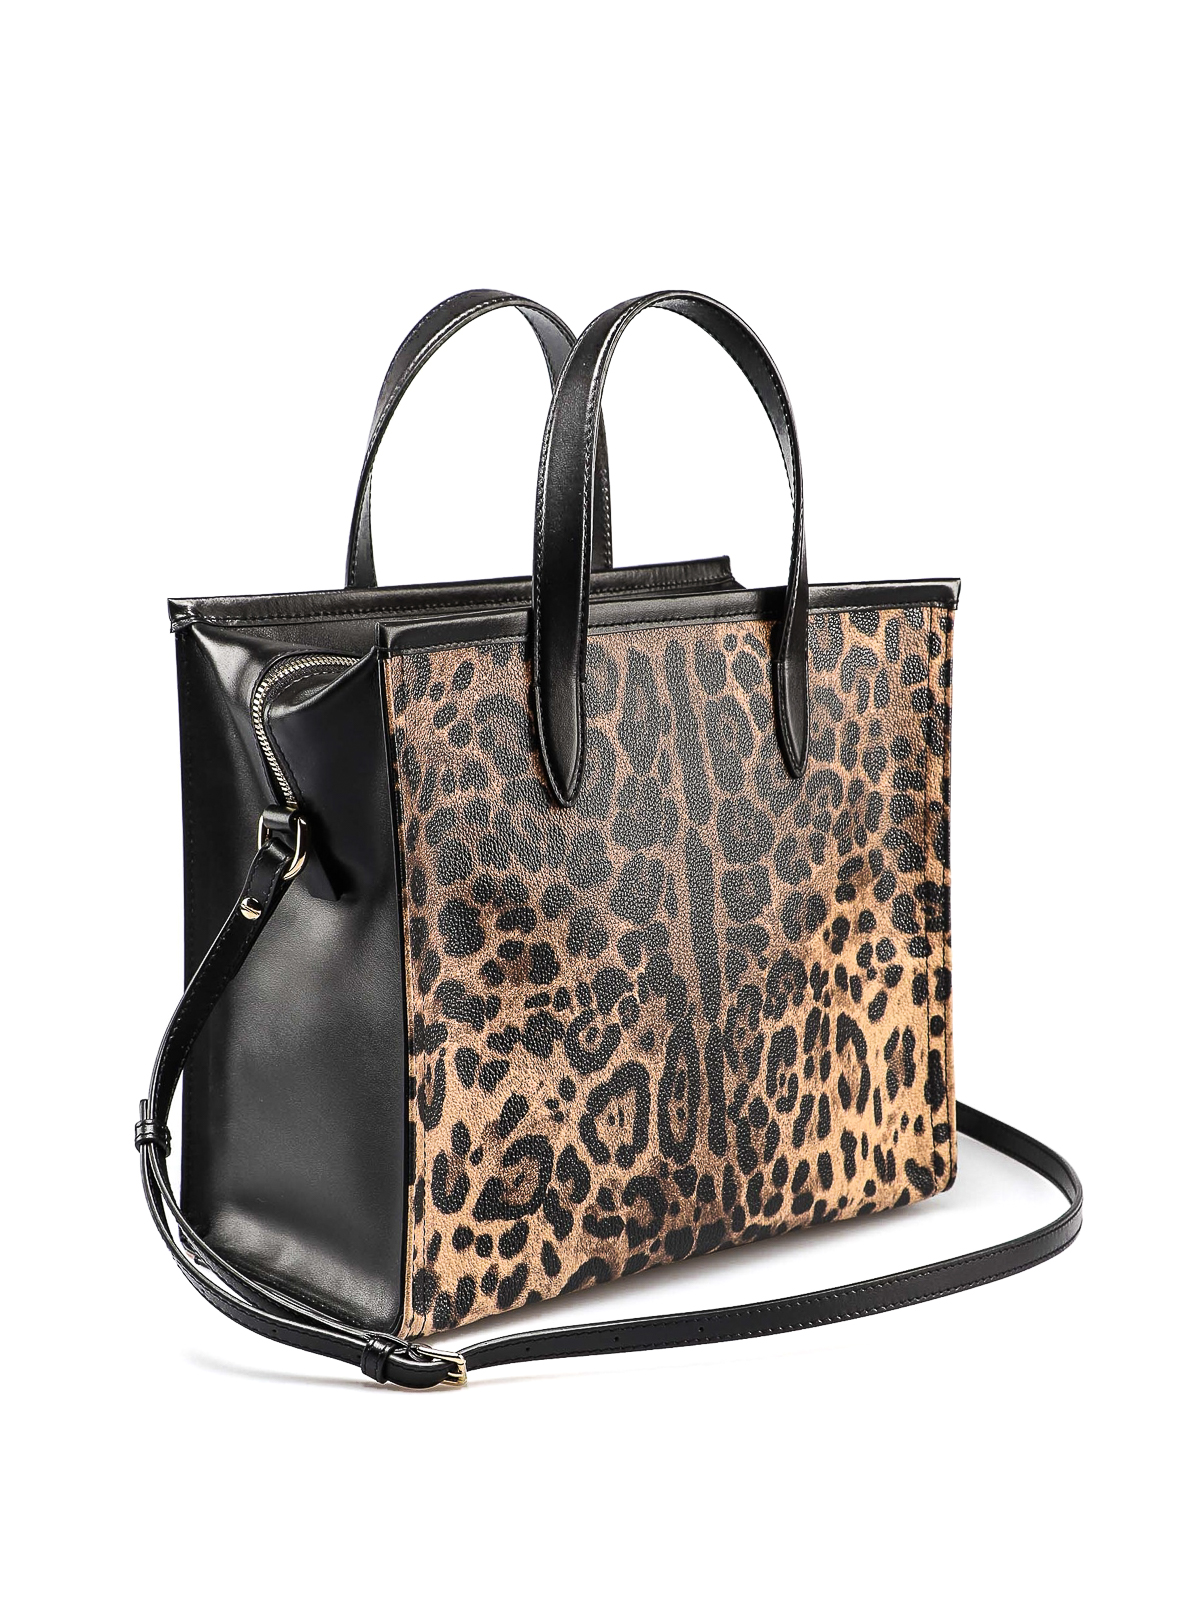 dolce gabbana leopard bag